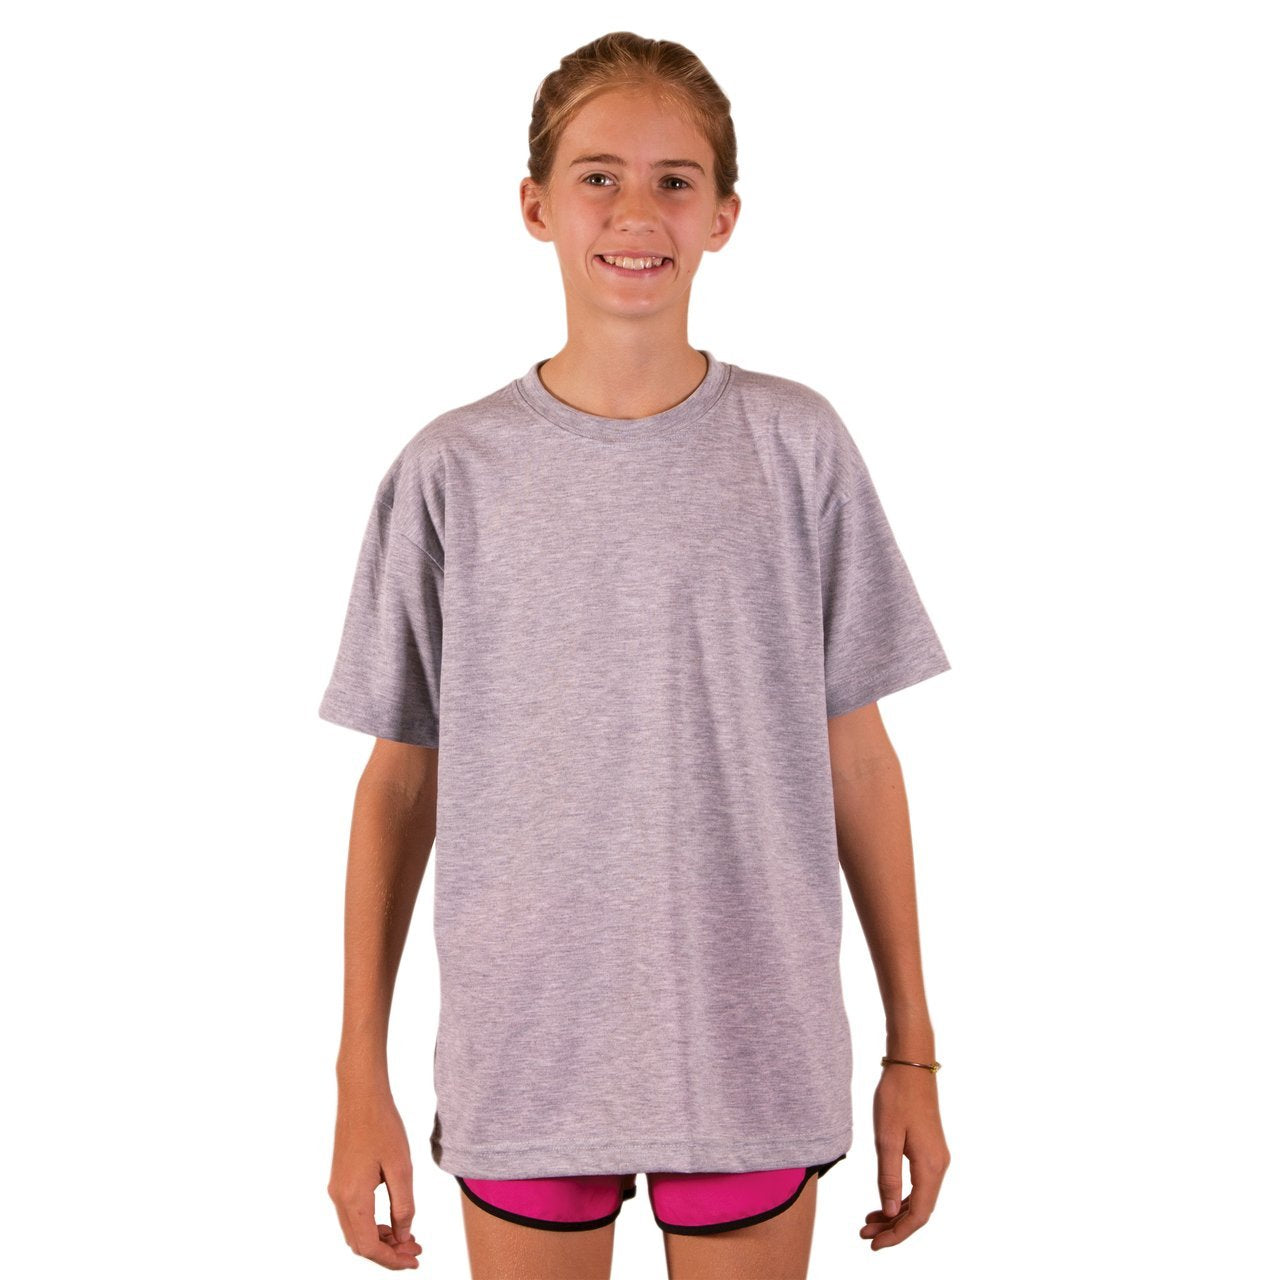 Youth SpunSoft Tech Short Sleeve T-Shirt